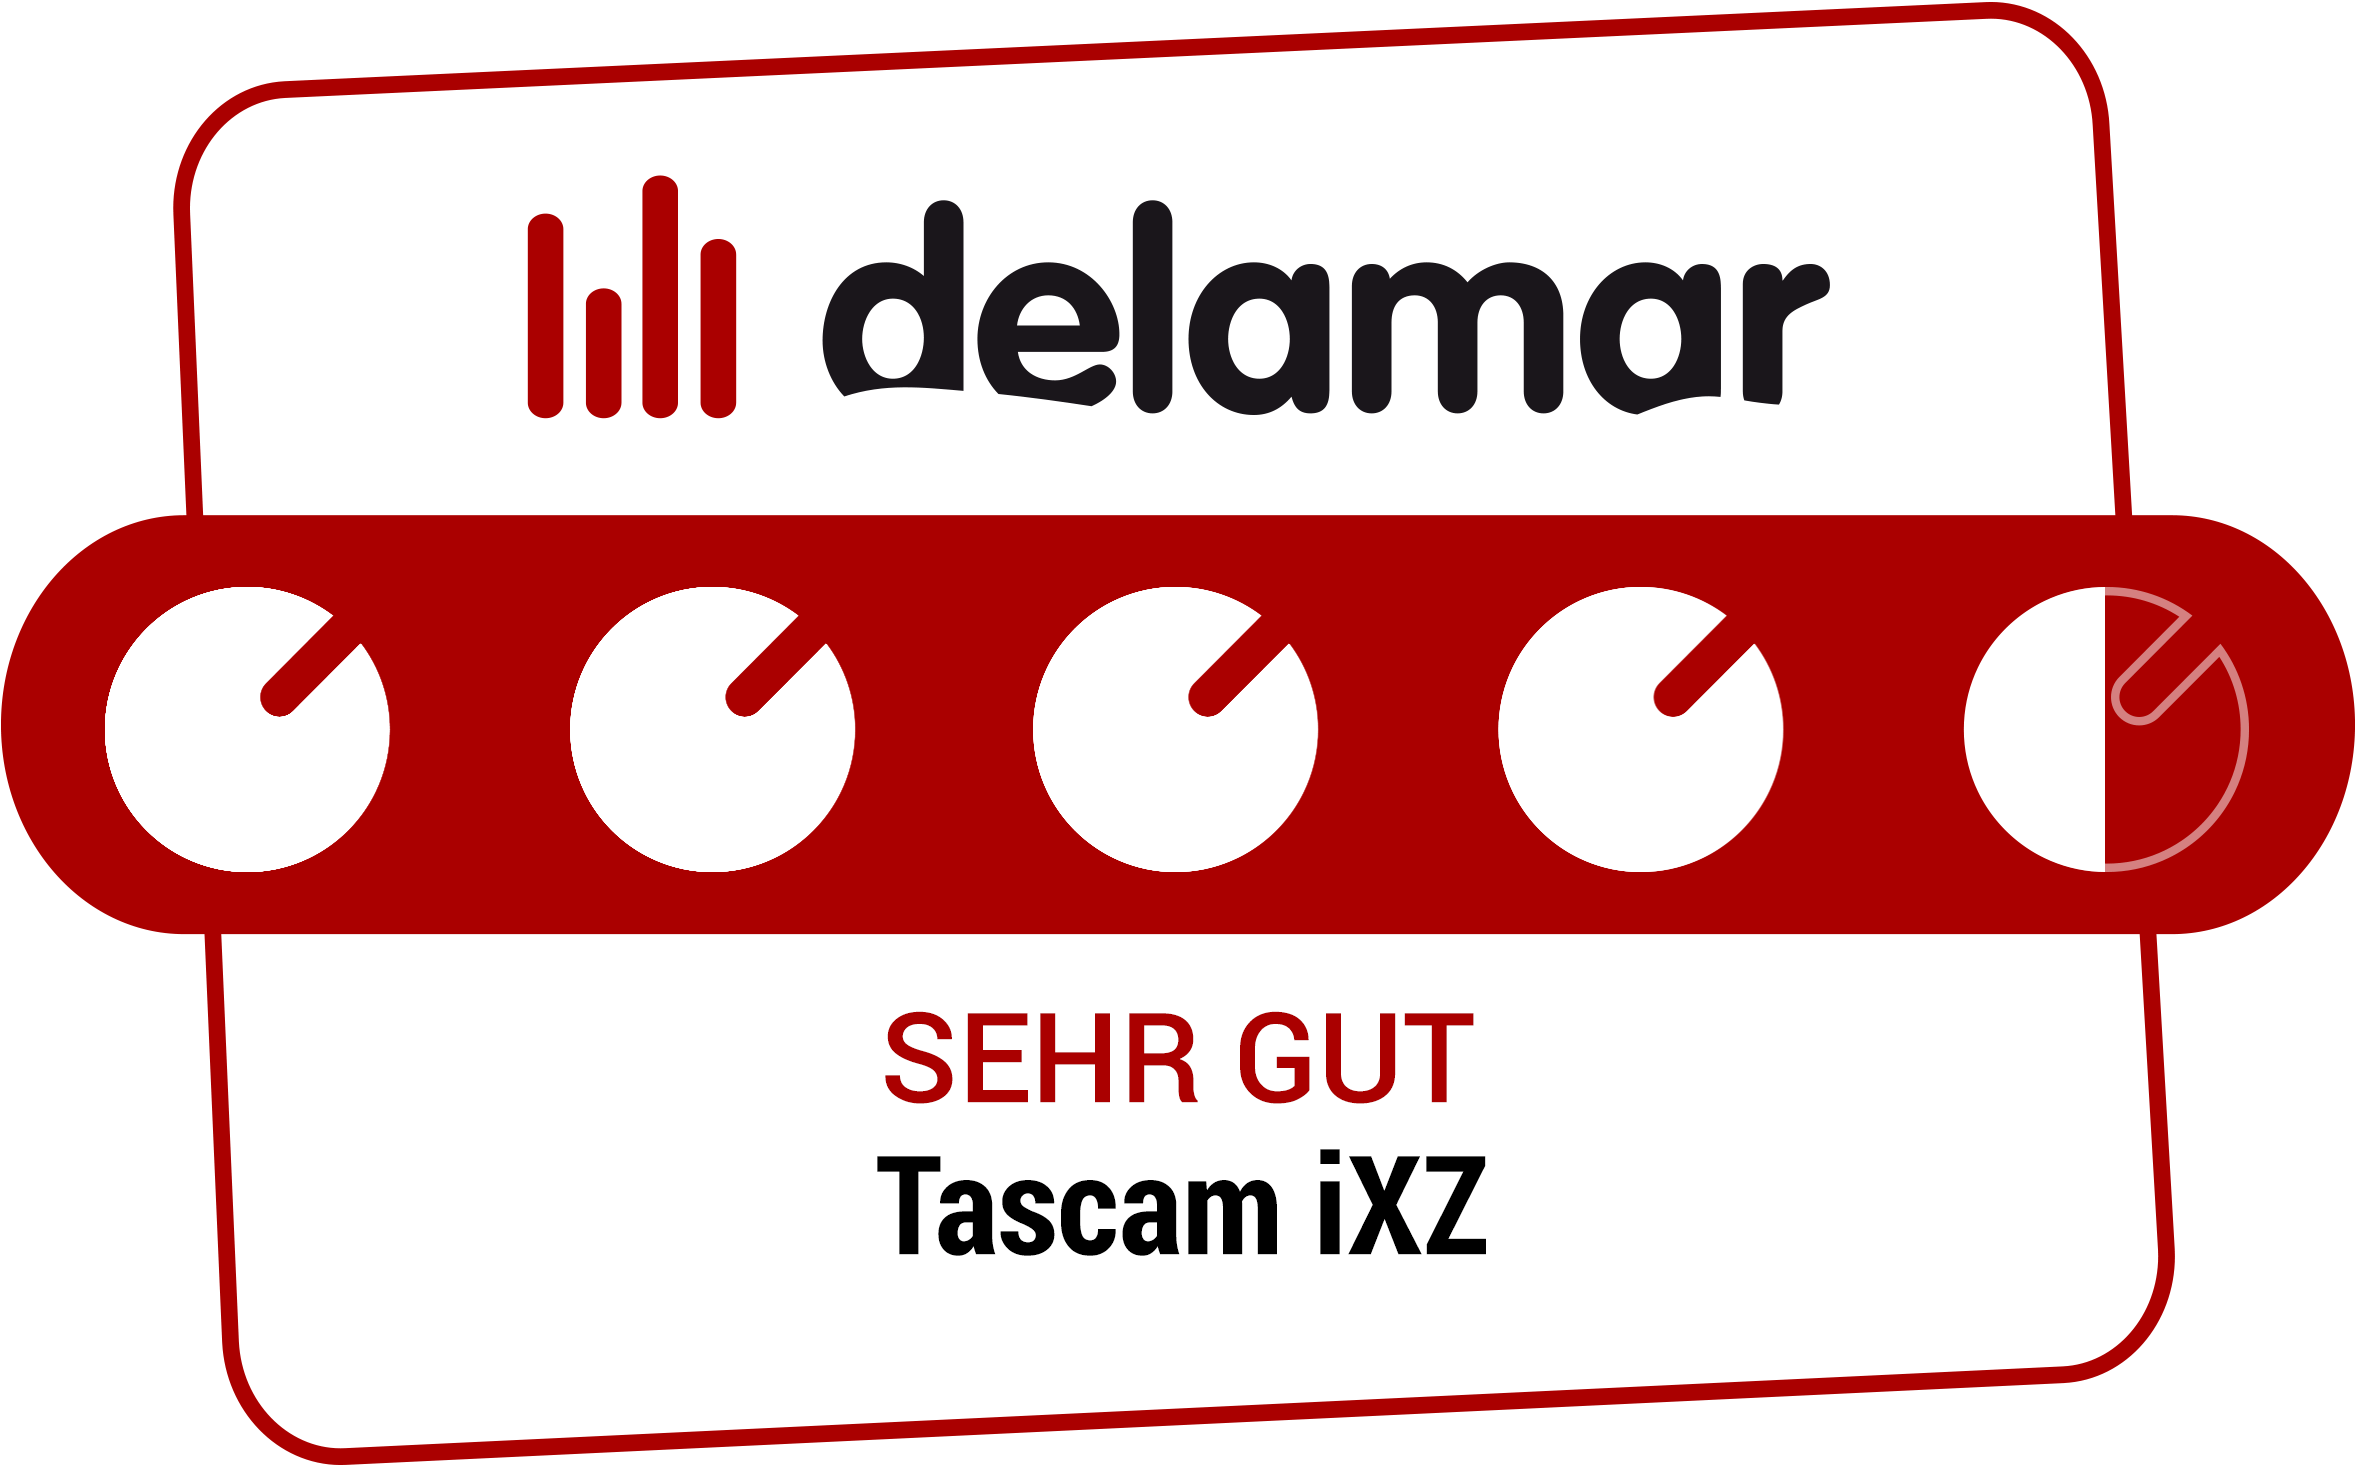 Delamar Testsiegel 'Sehr gut' für Tascam iXZ